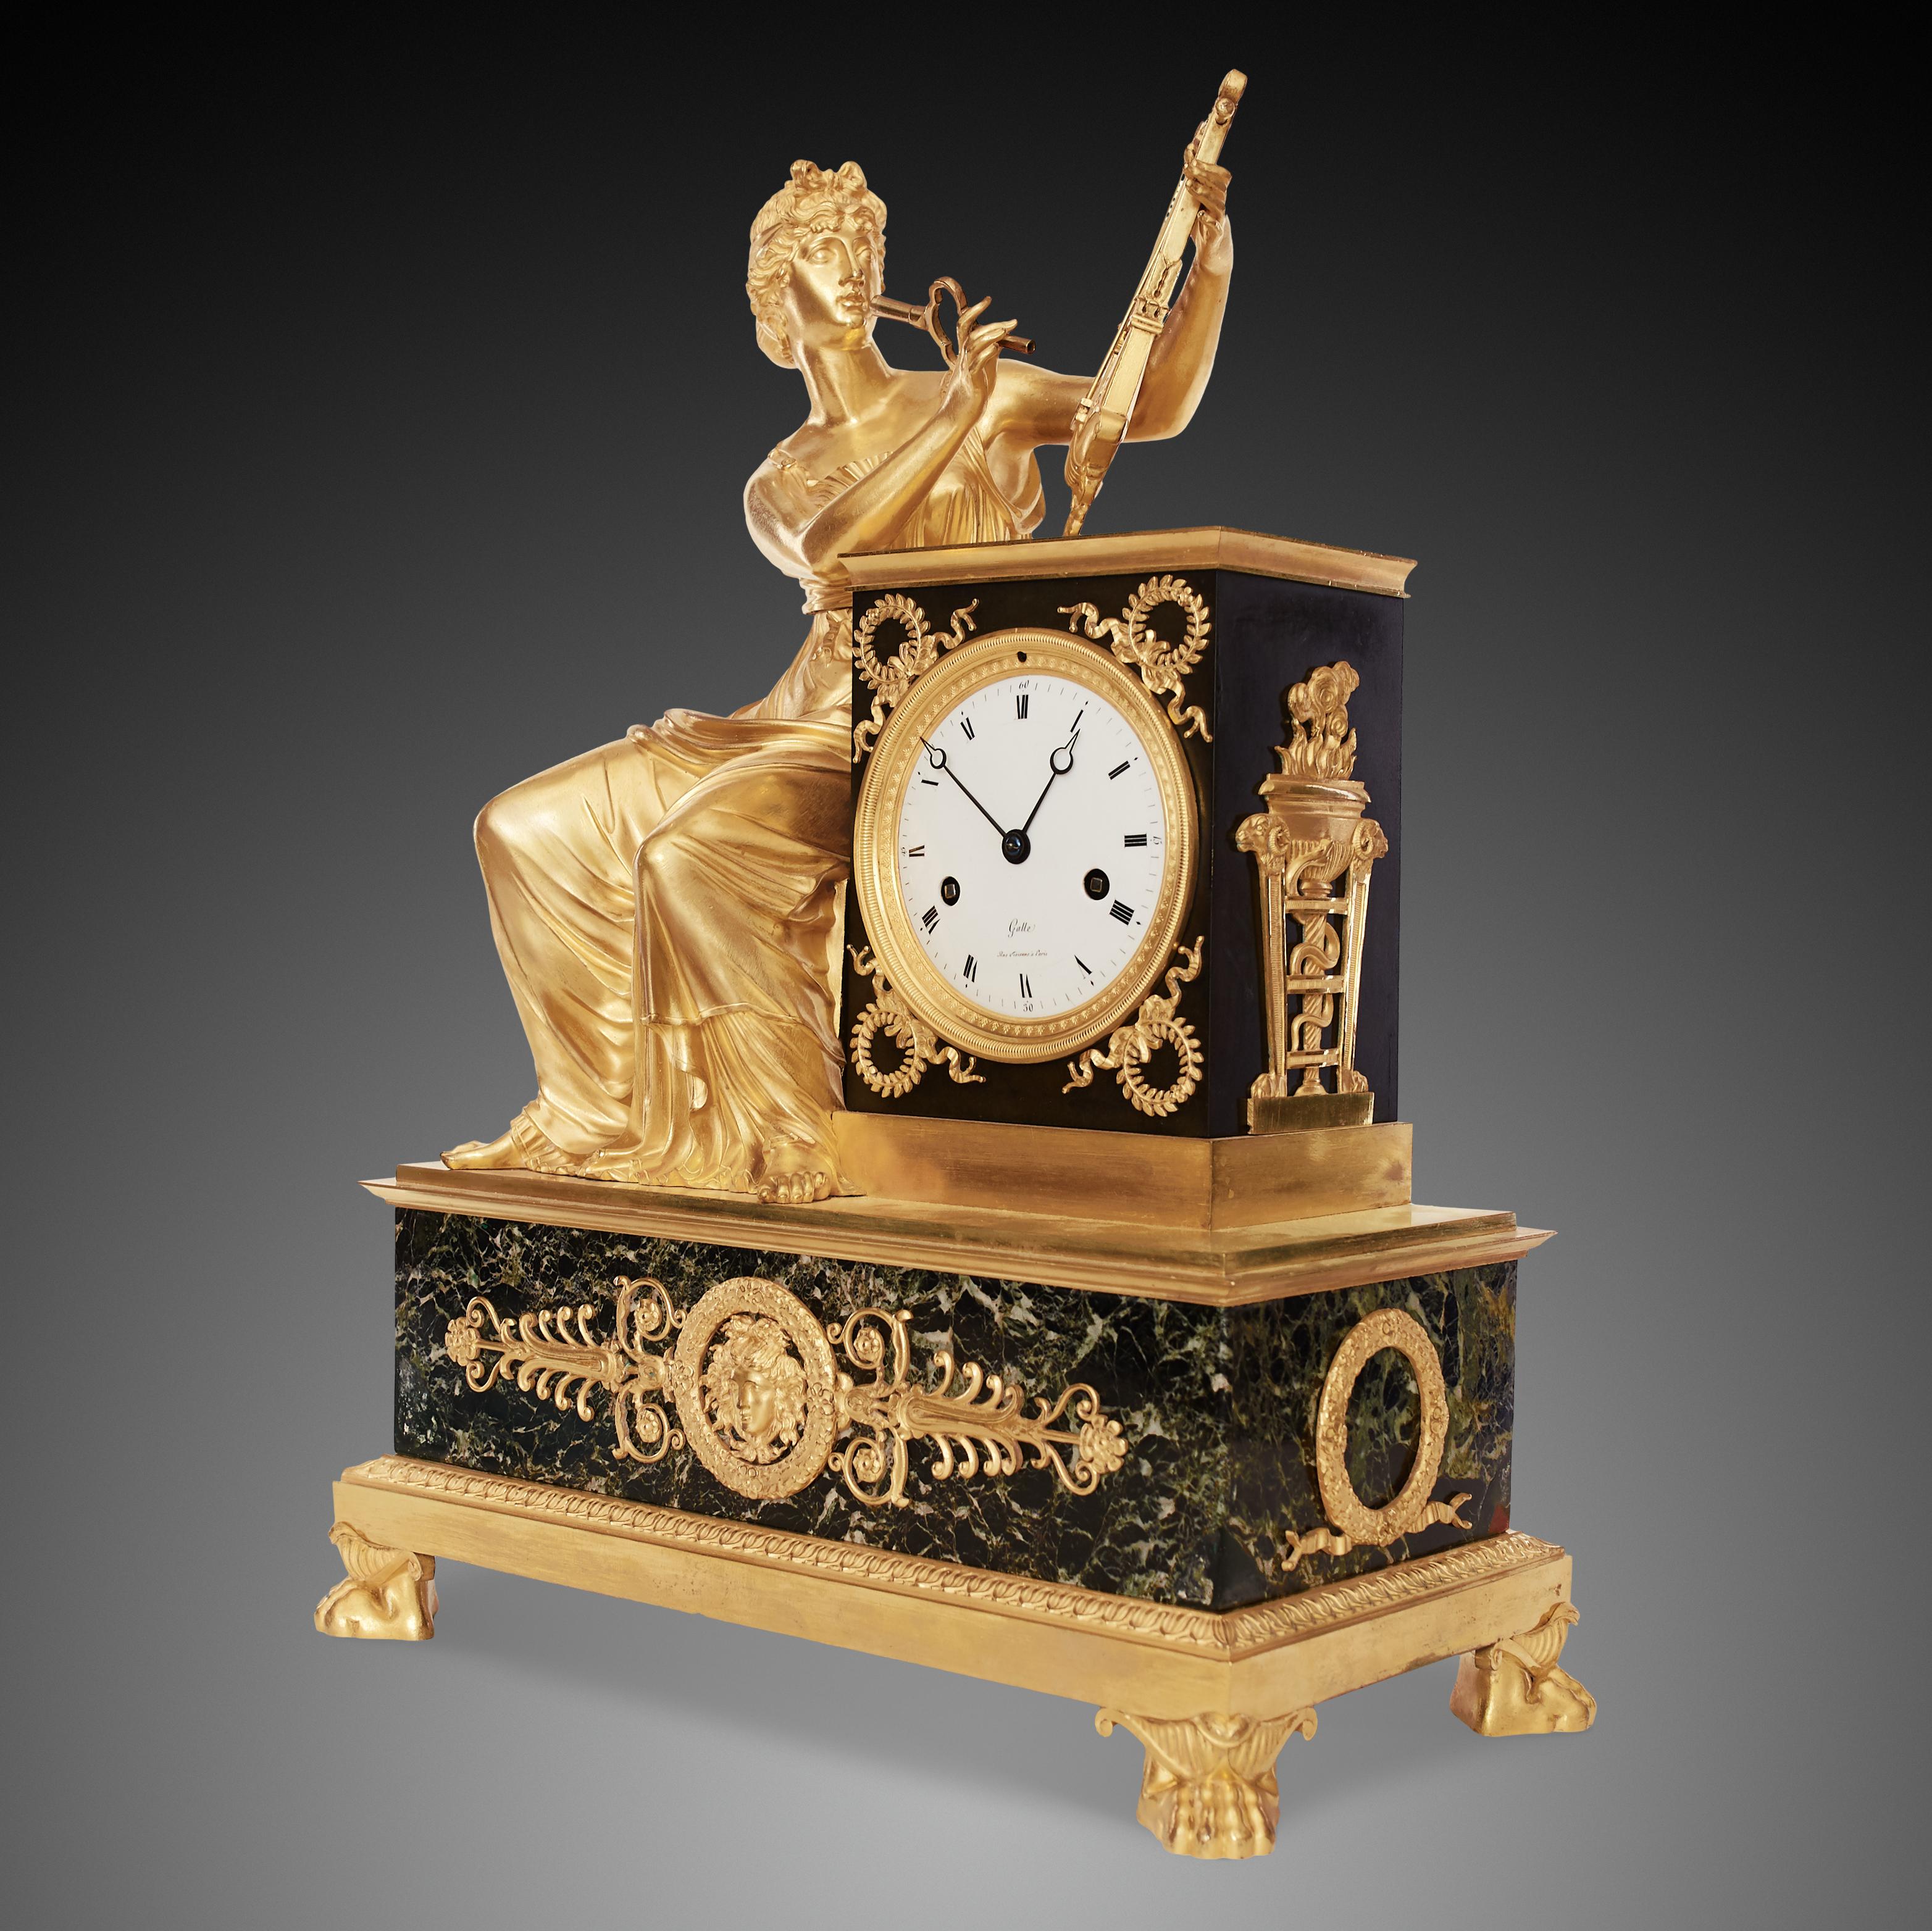 Il s'agit d'une très belle horloge de cheminée ancienne de style Empire français, faite de bronze doré et de marbre. L'horloge est placée sur un piédestal rectangulaire en marbre, avec quatre pieds en forme de patte de lion. Le cadran en émail